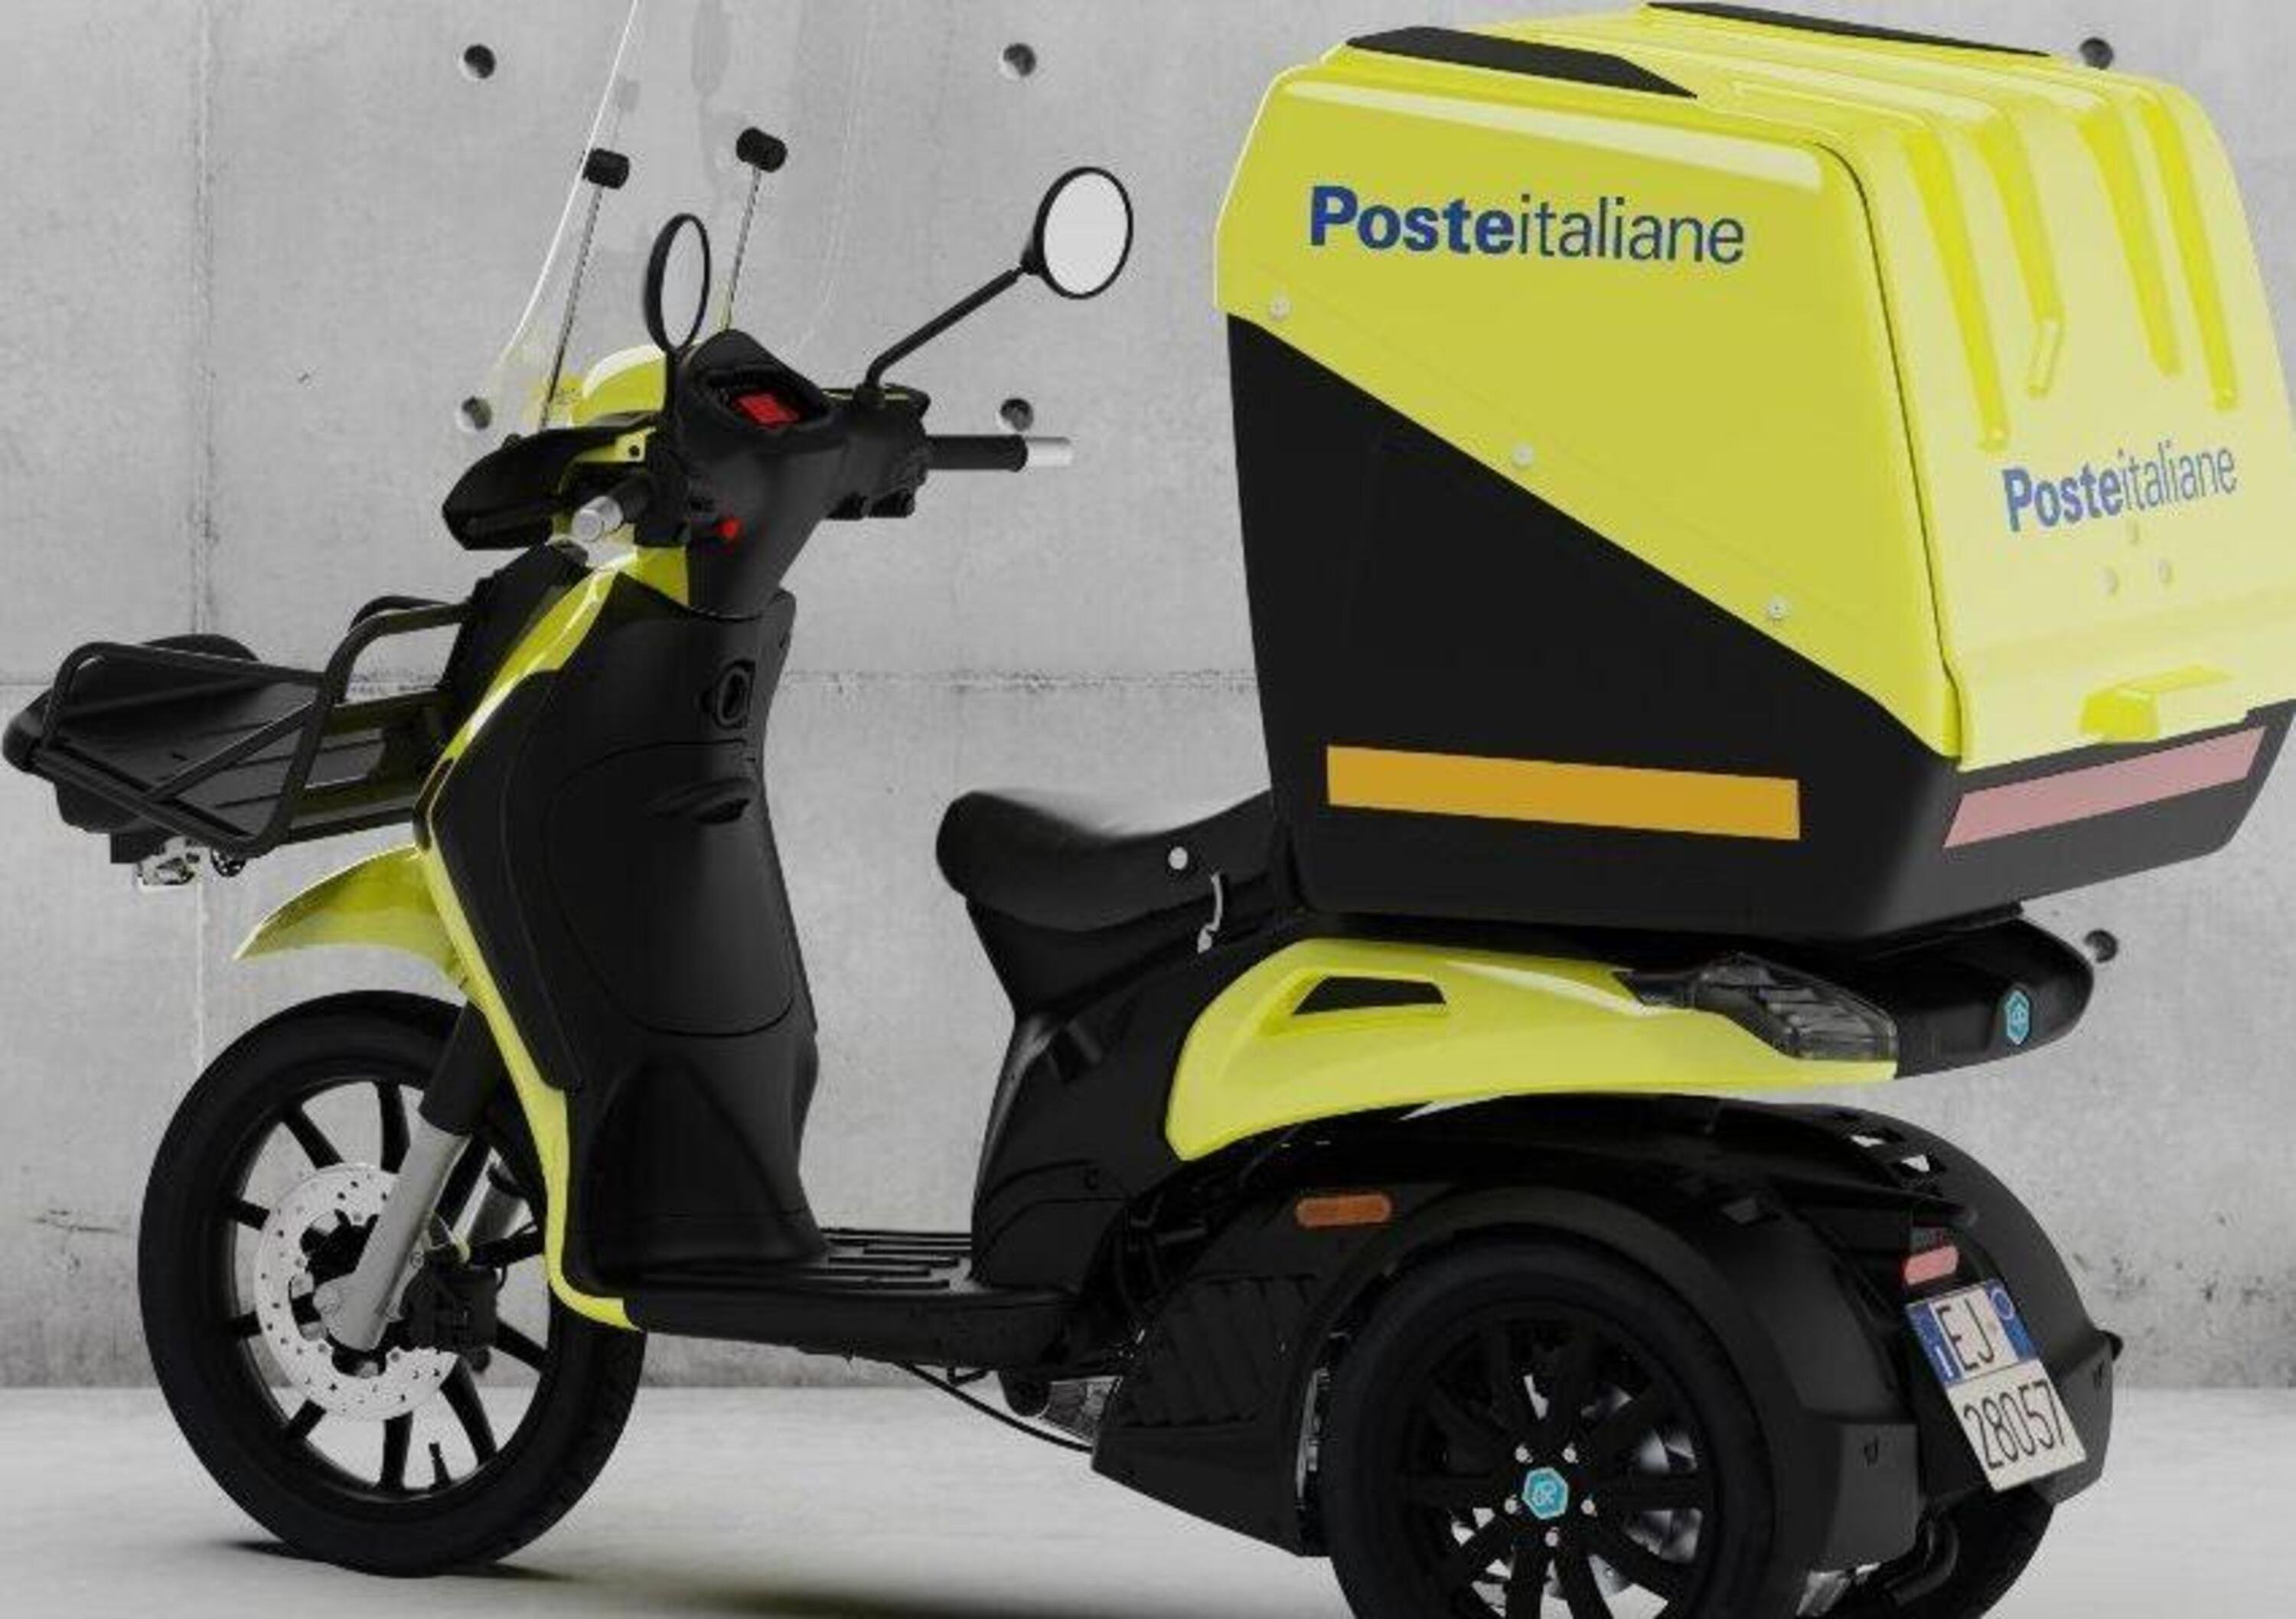 Piaggio: commessa di 5.000 scooter da Poste Italiane